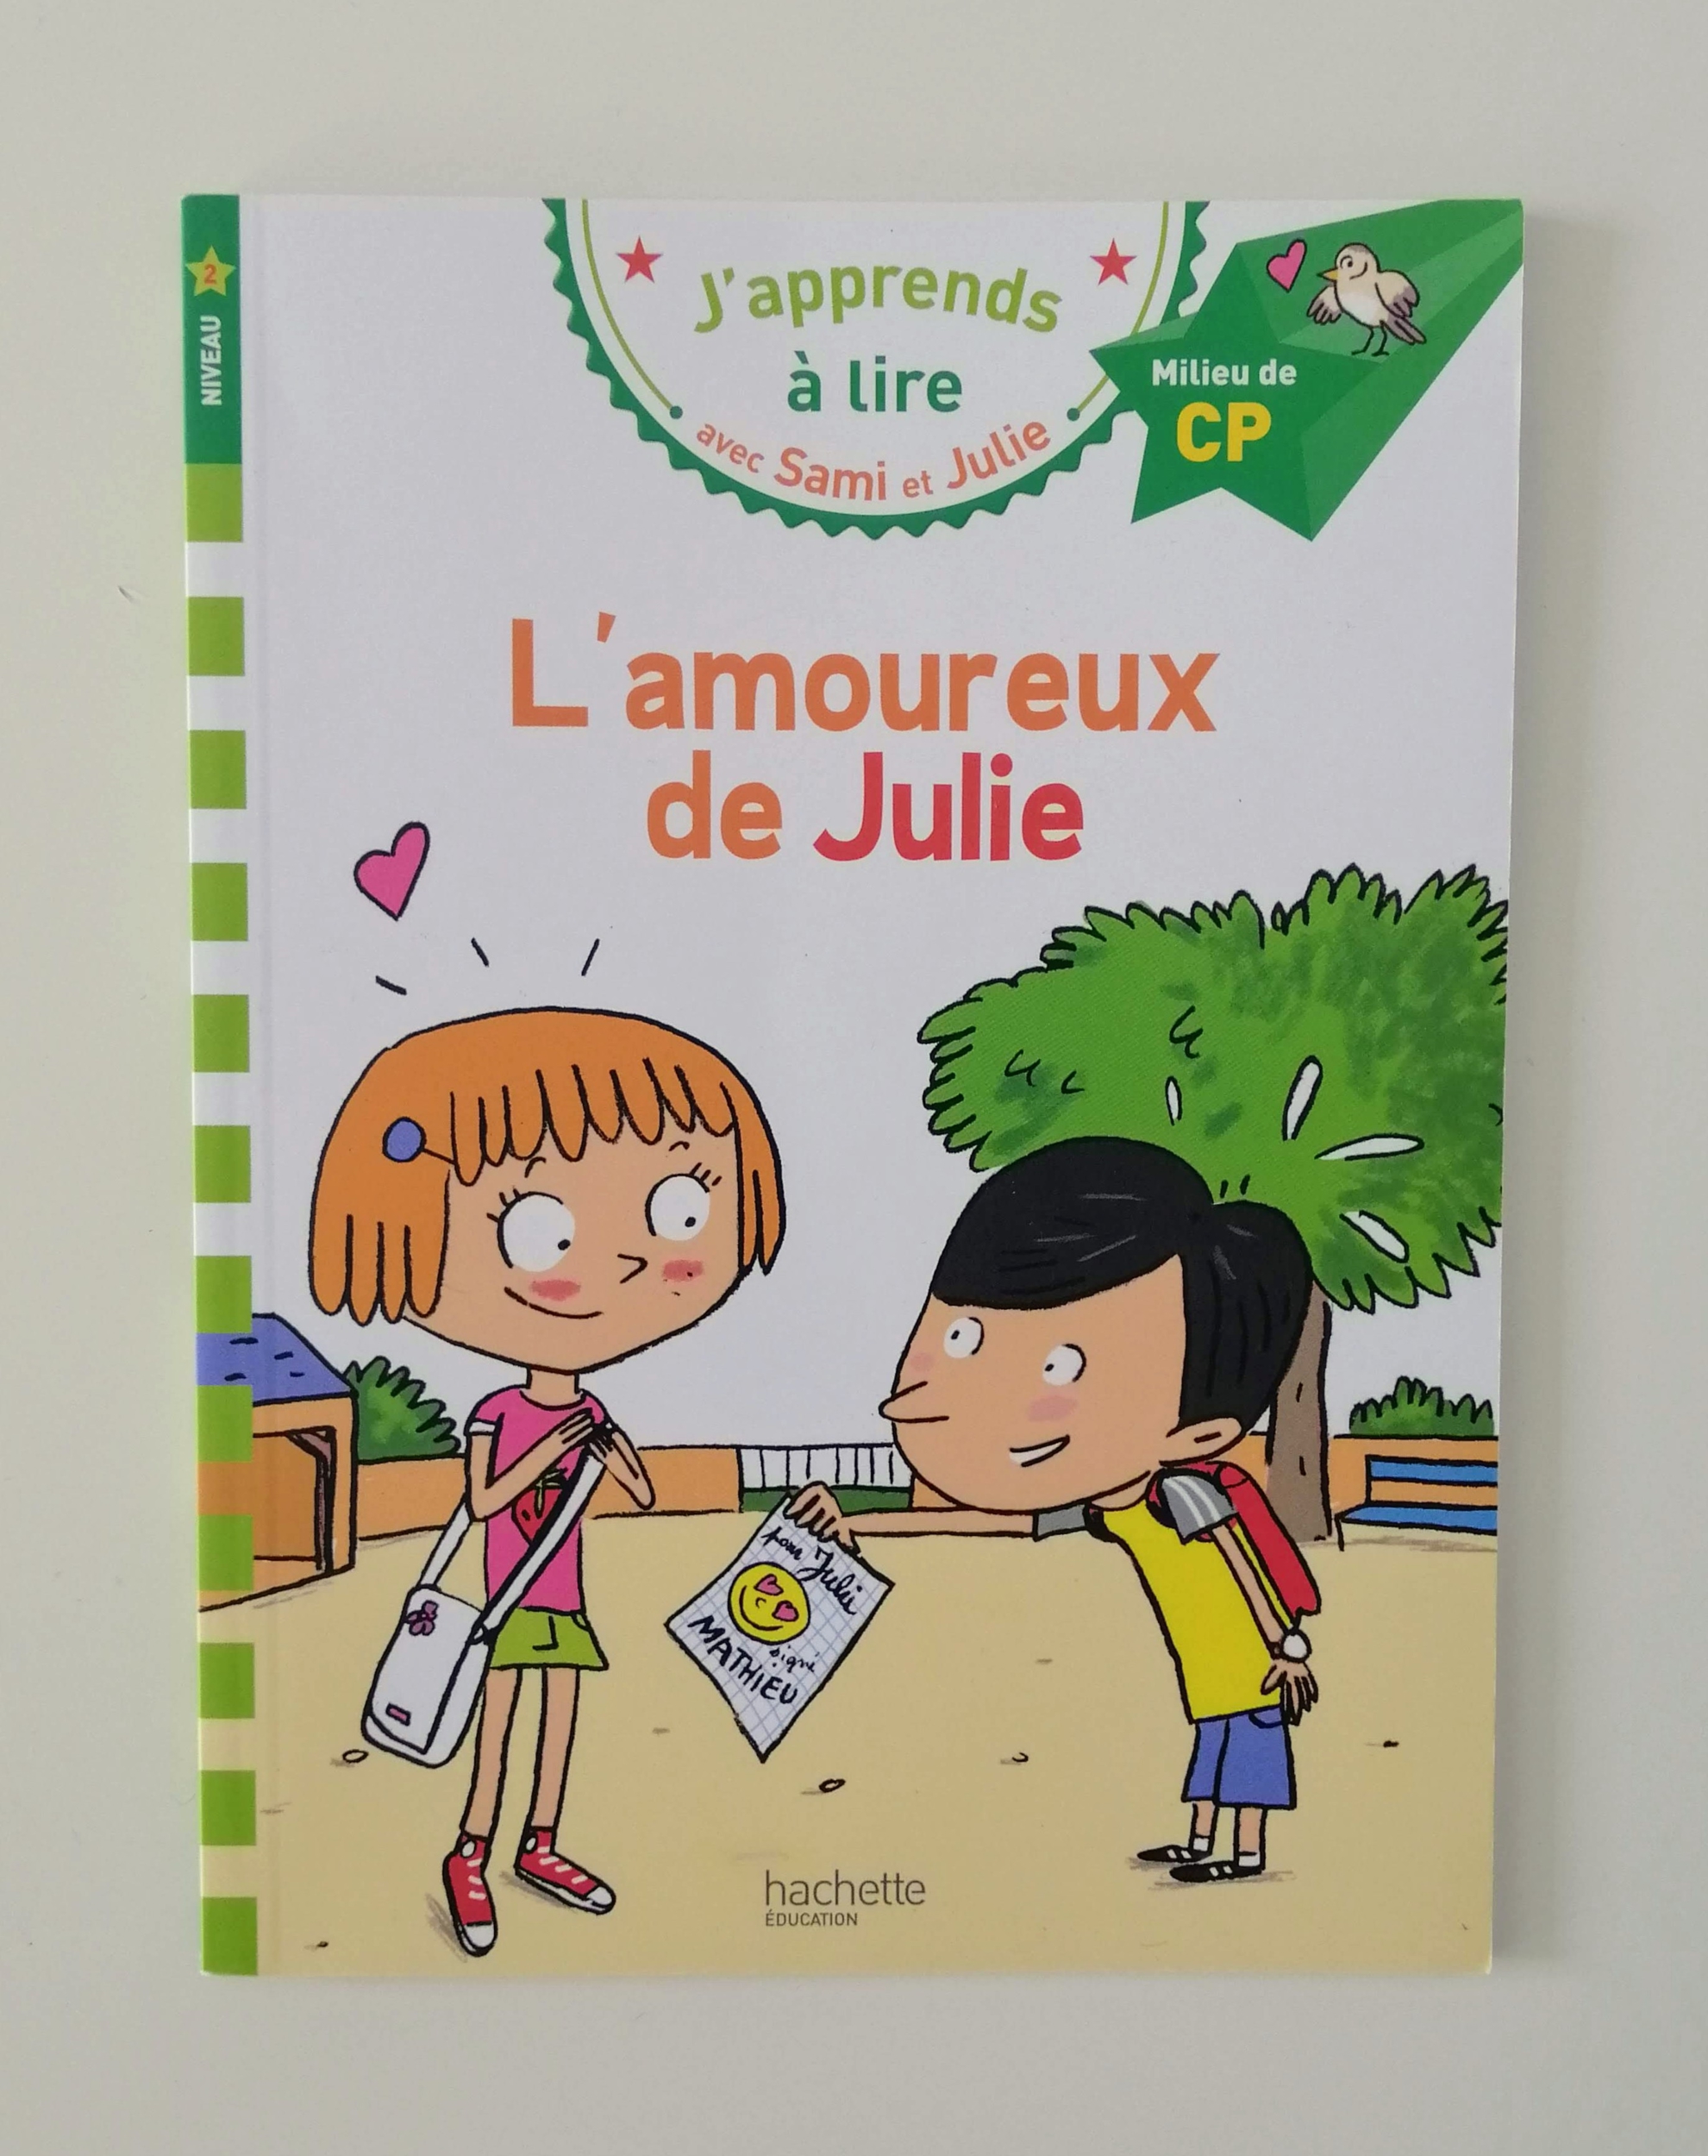 J'apprends à lire avec Sami et Julie - L'amoureux de Julie